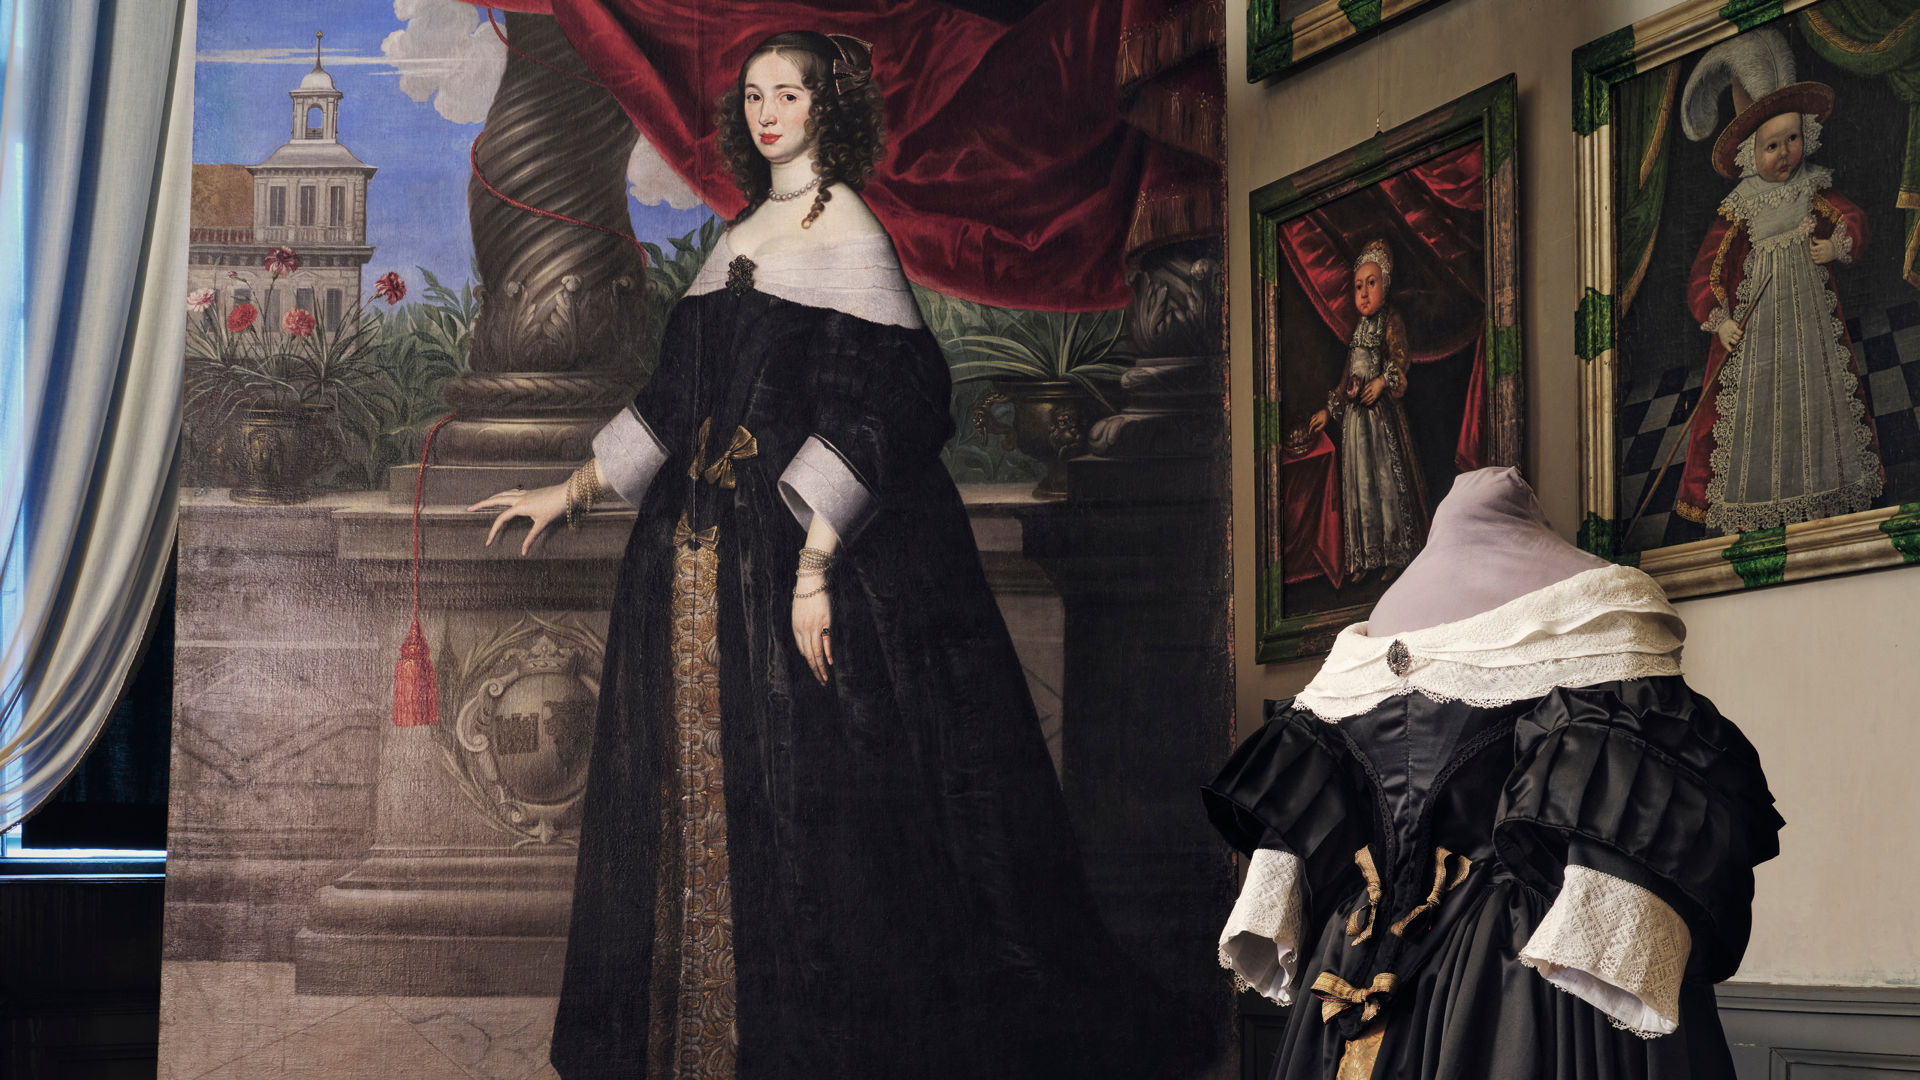 portrait of Anna Margareta von Haugwitz with a reconstruction of her dress in the foreground.